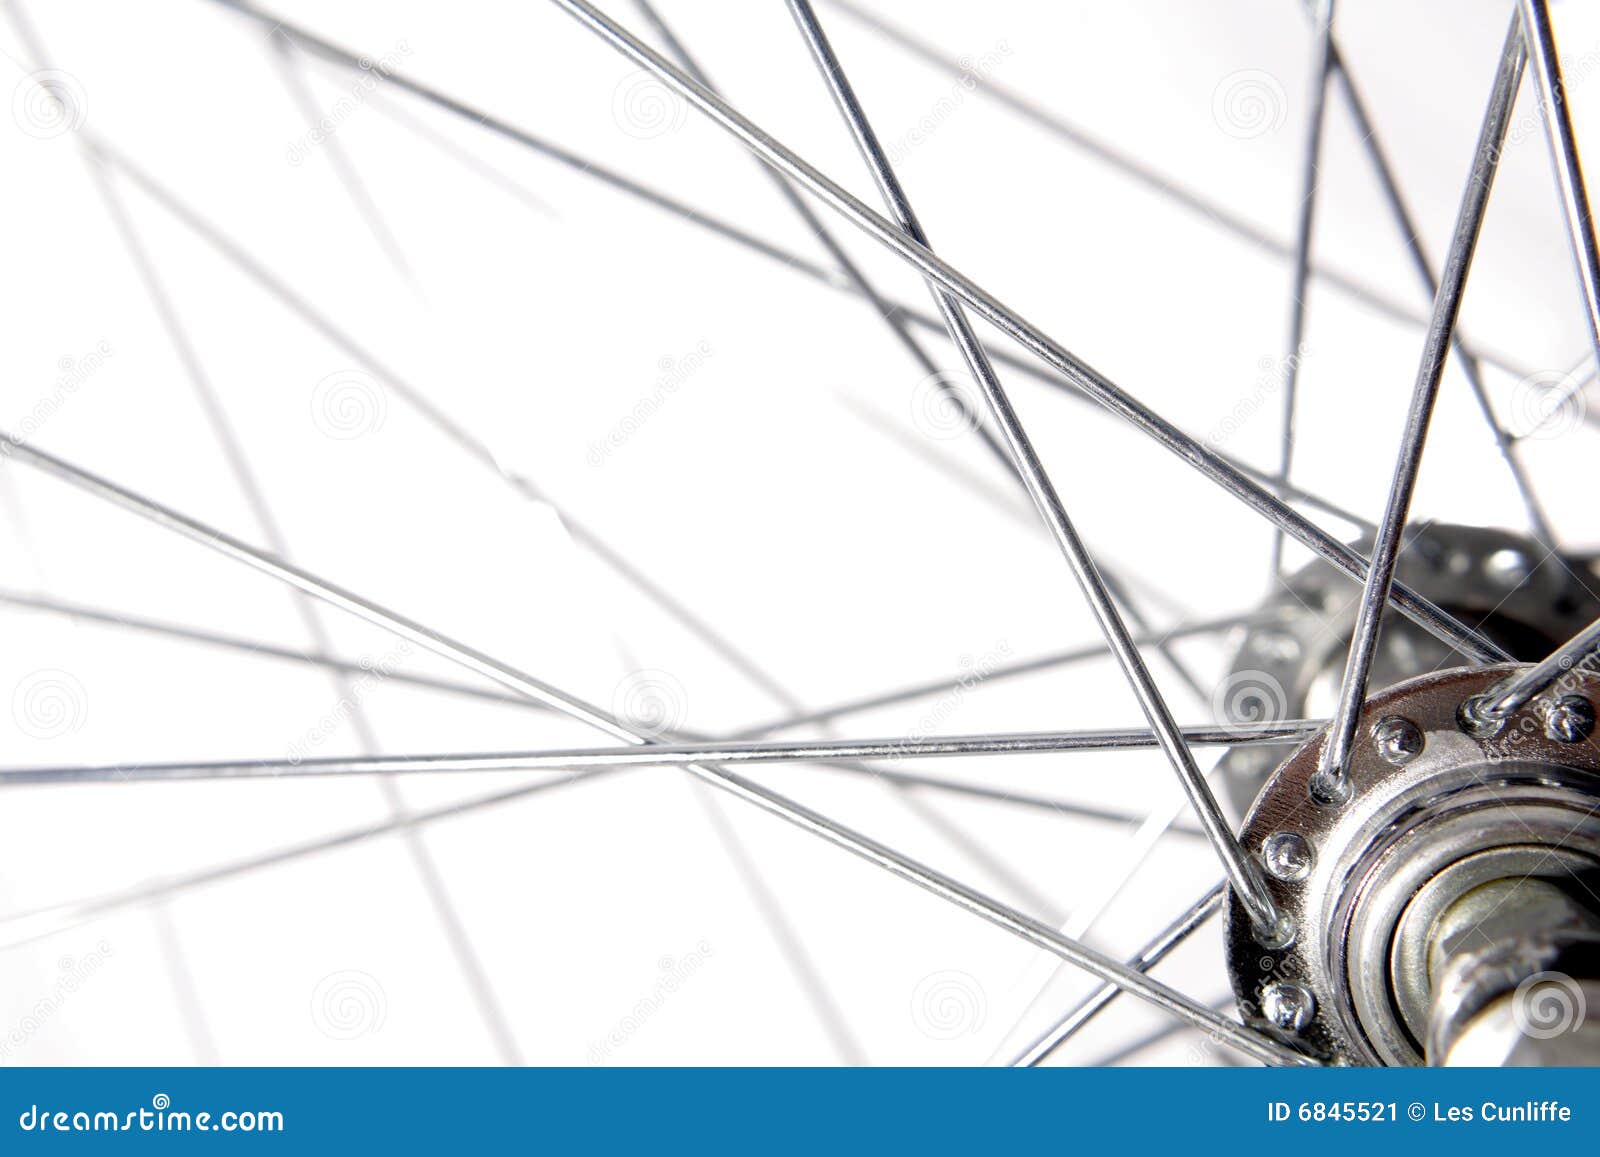 enfocar Dominante Pionero Rayos de la bicicleta imagen de archivo. Imagen de primer - 6845521